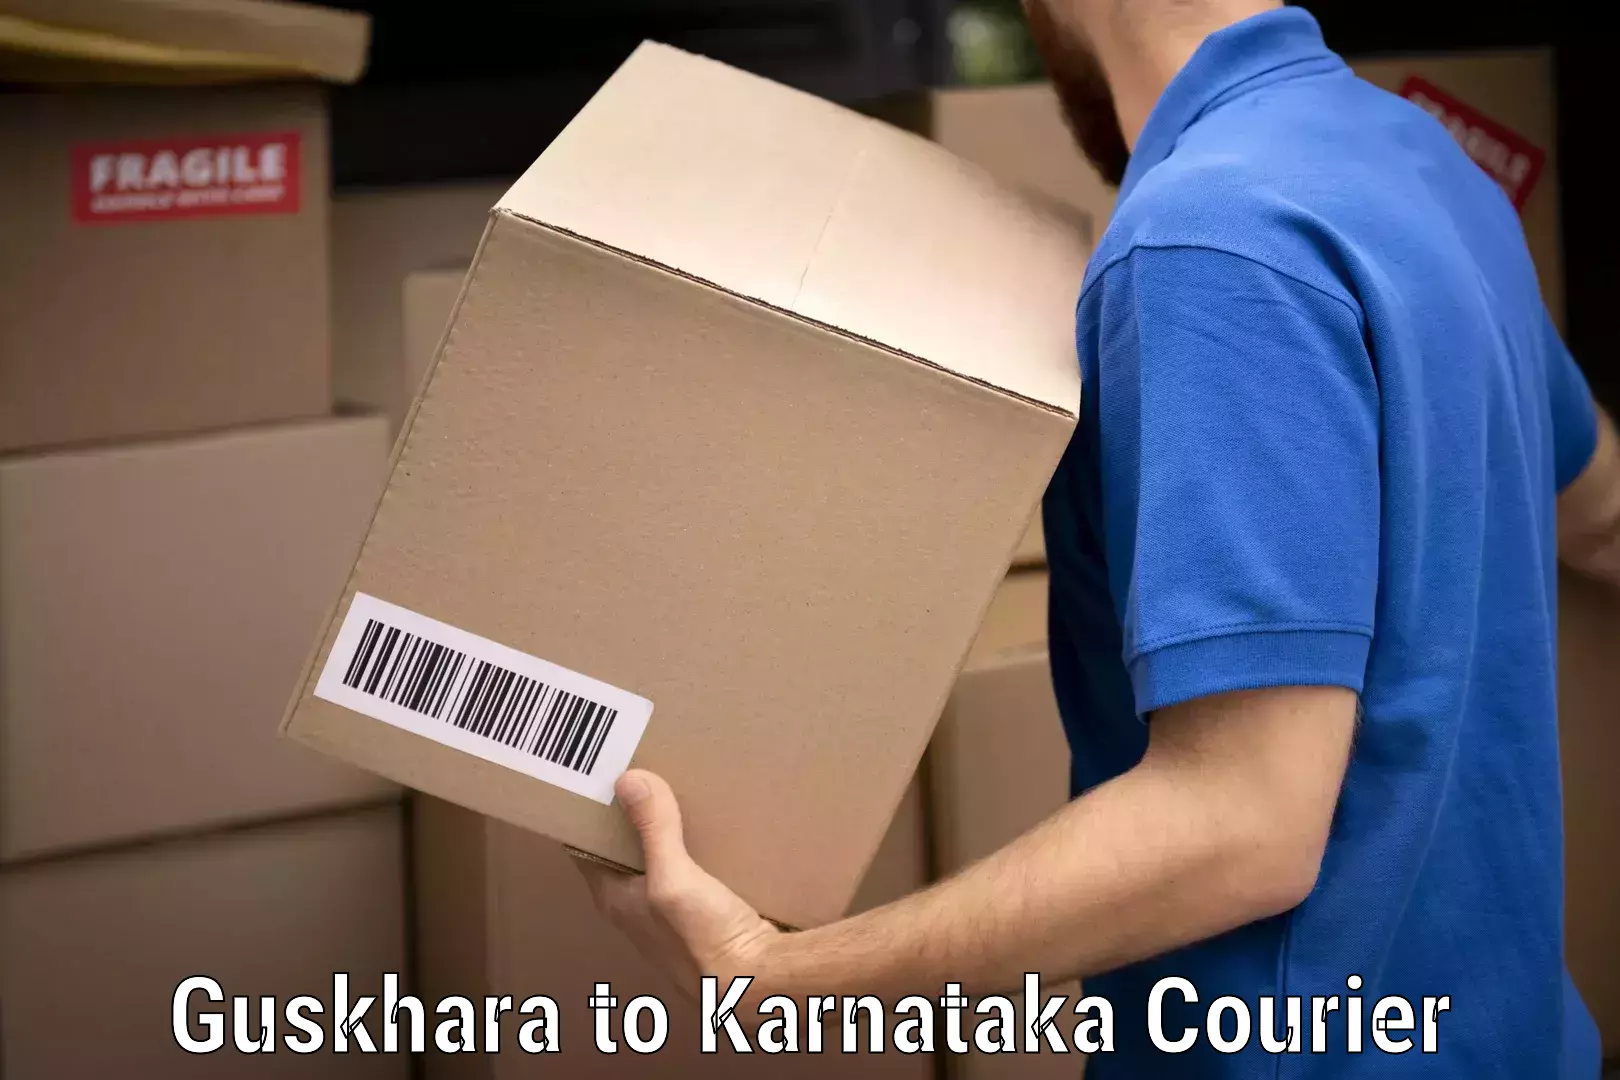 Professional moving strategies Guskhara to Karnataka